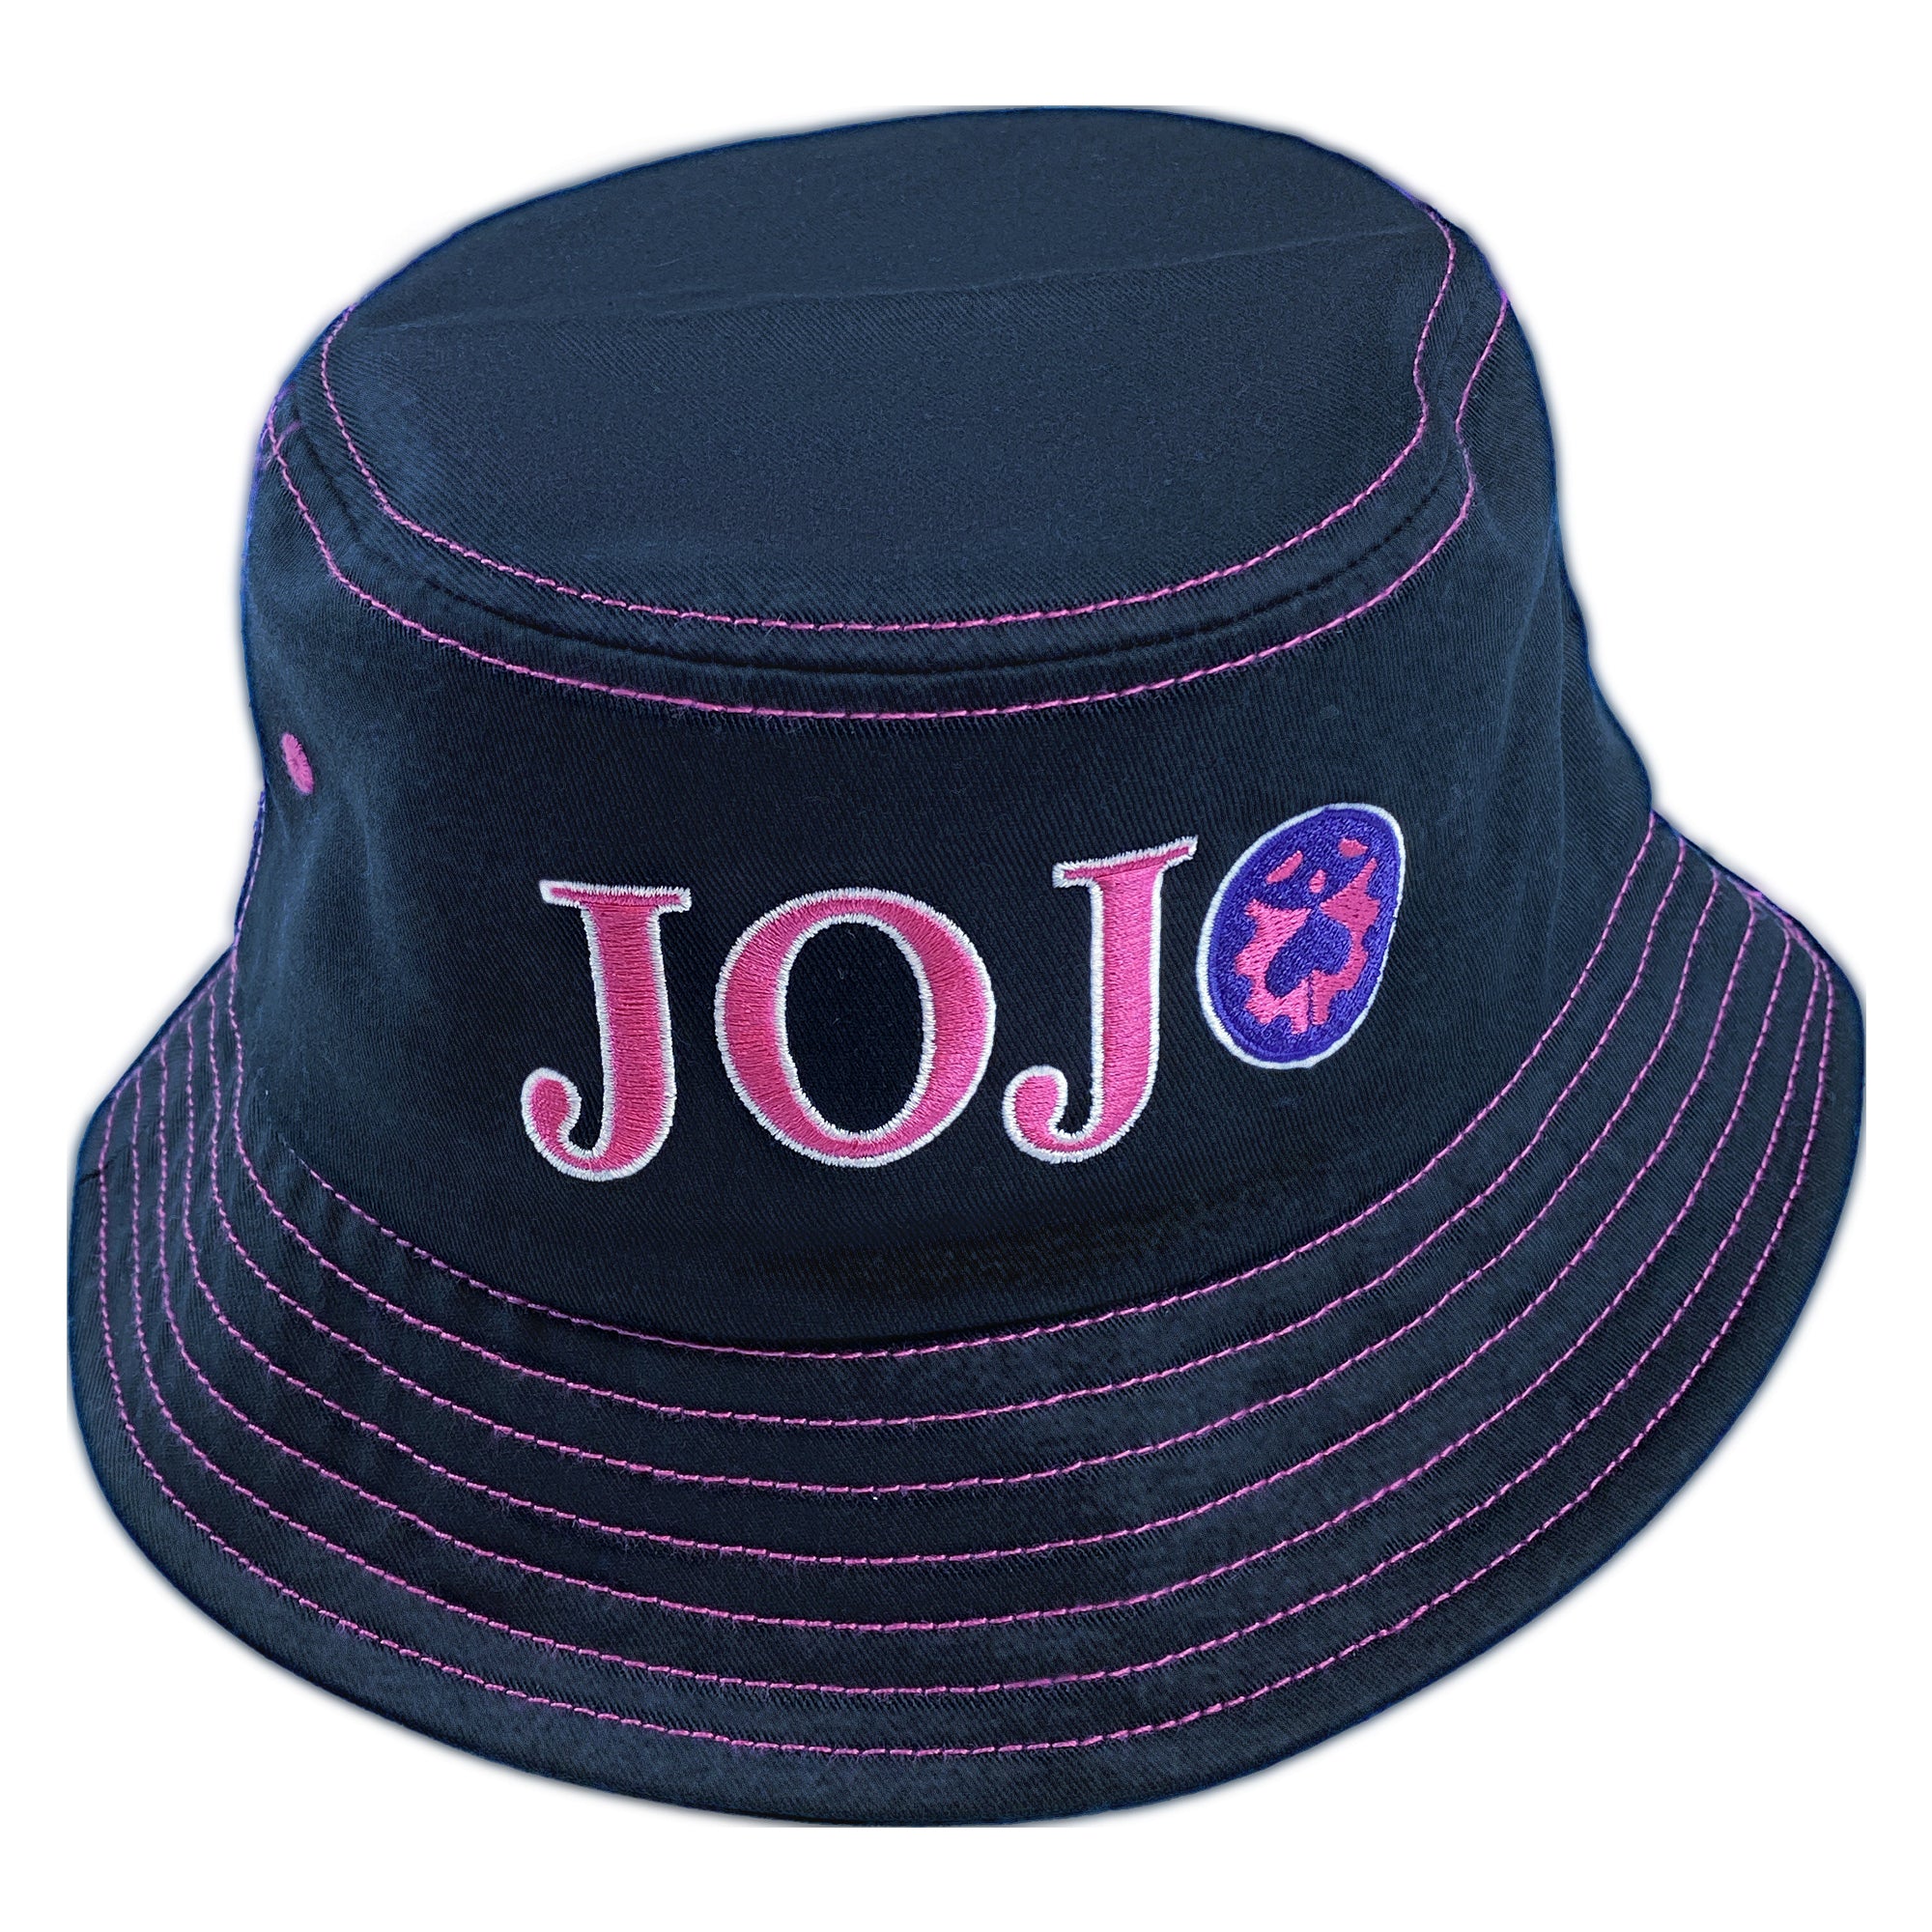 JoJo's Bizarre Adventure - Logo Bucket Hat image count 1